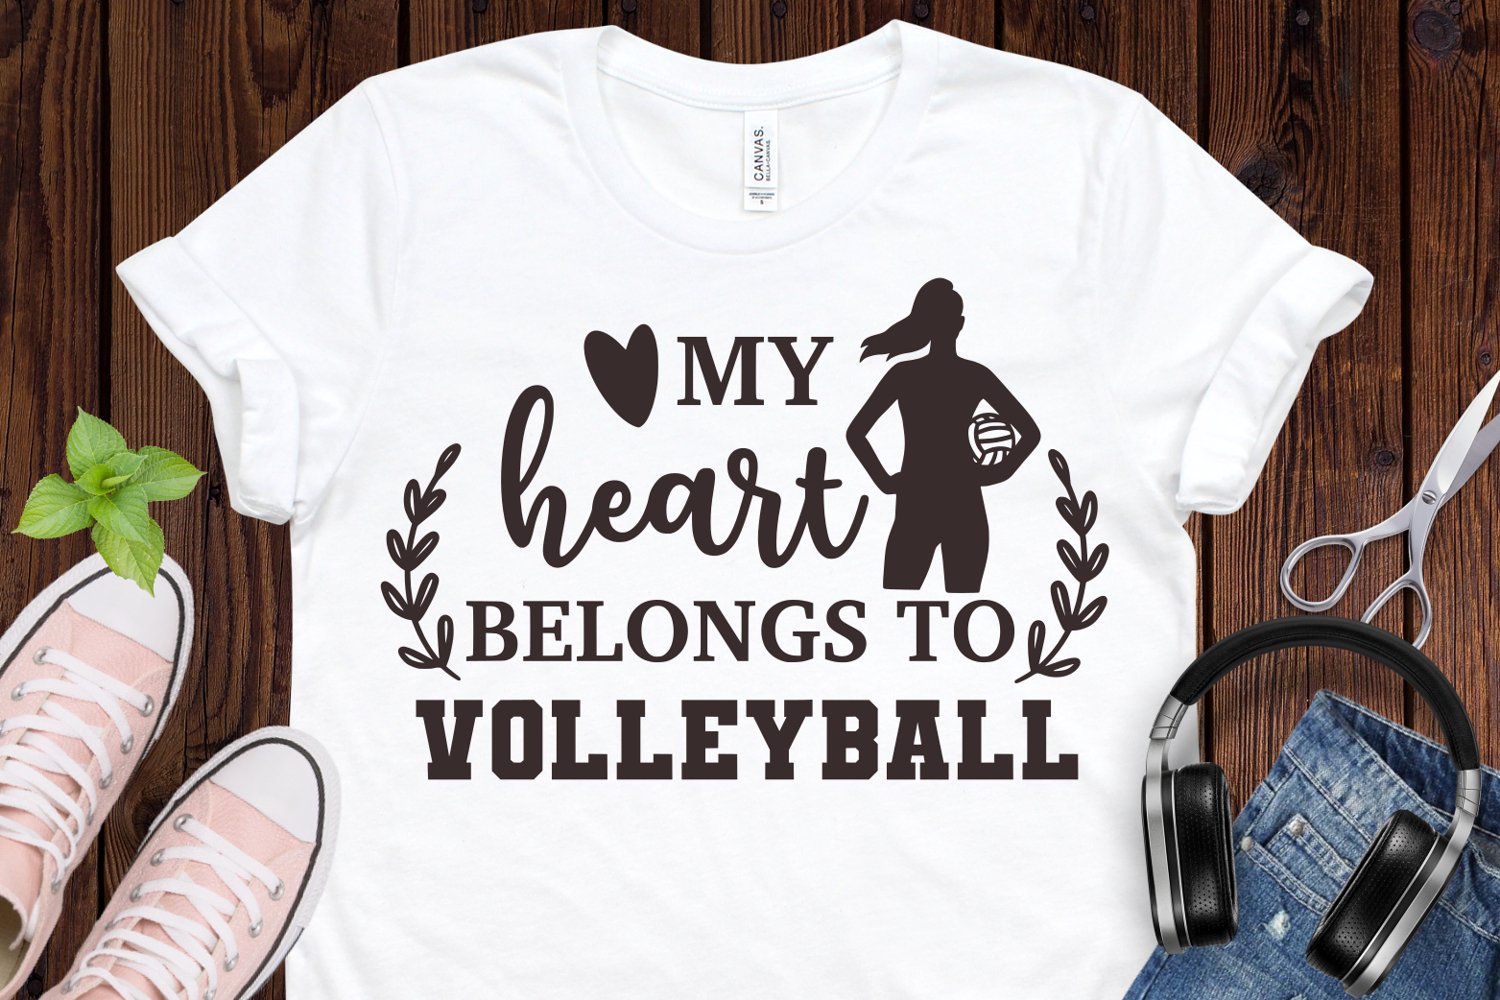 My heart belongs to volleyball - t-shirt design.